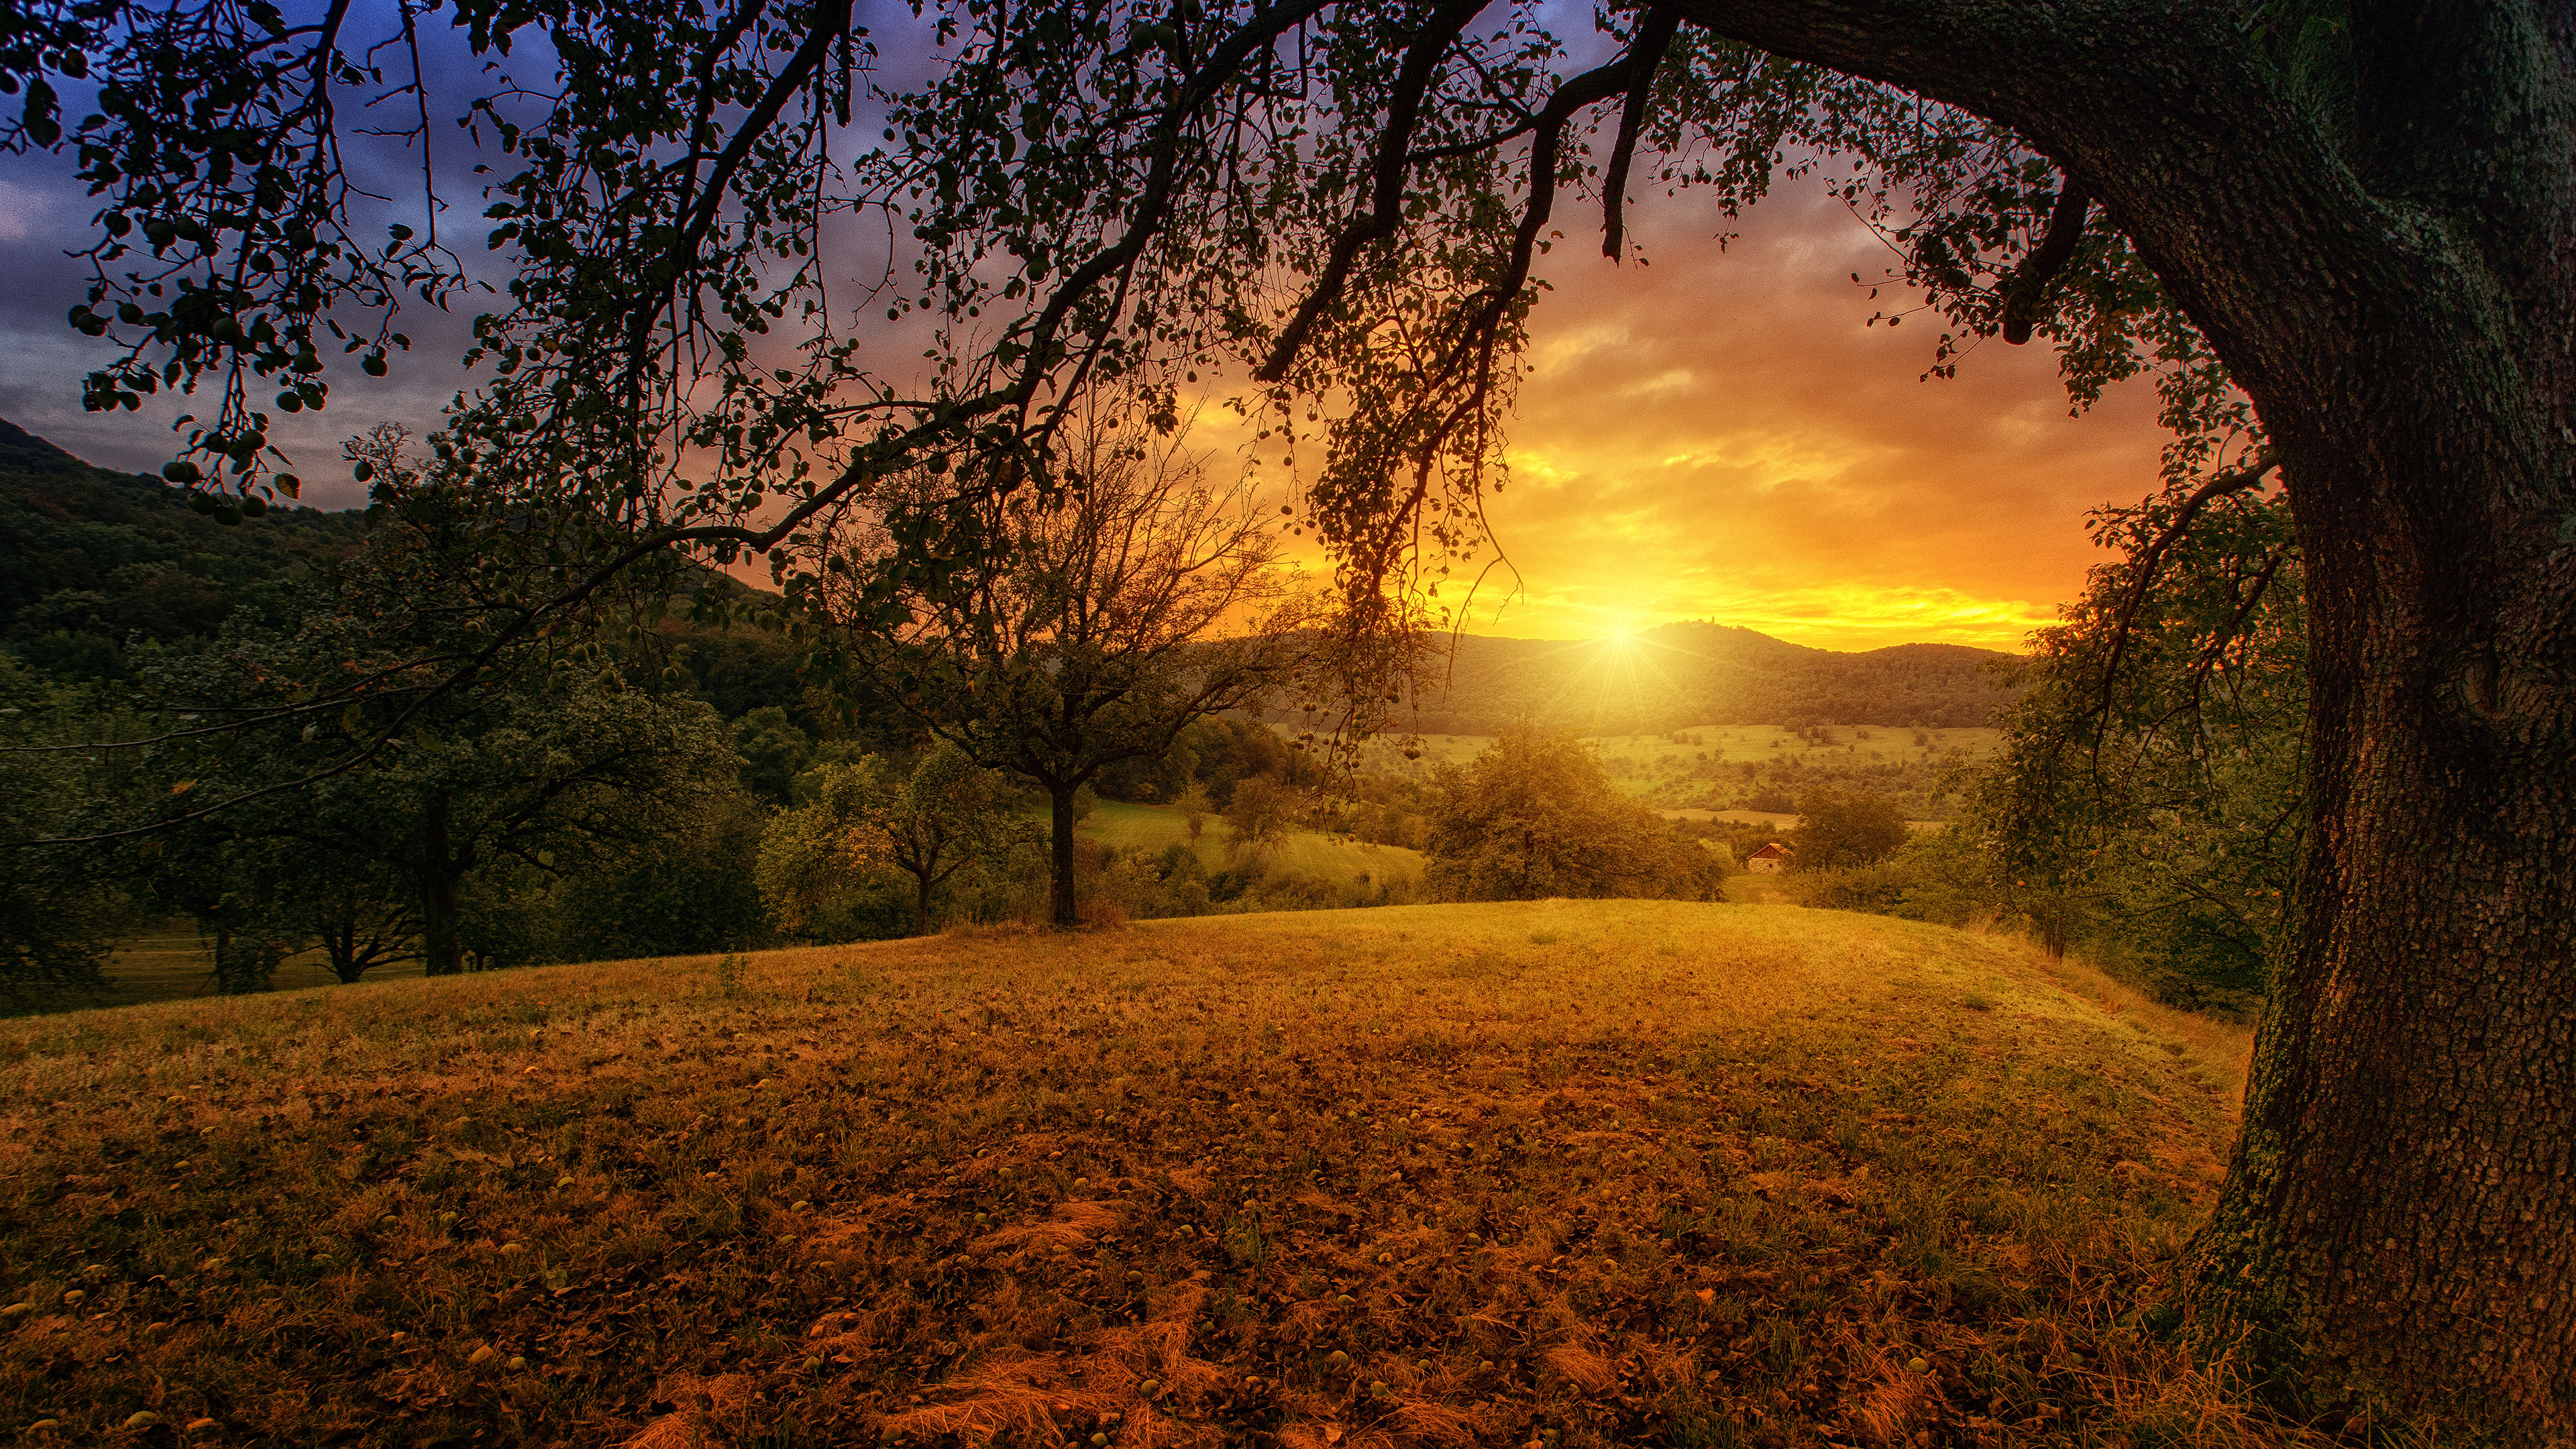 Sunset Over A Field - HD Wallpaper 